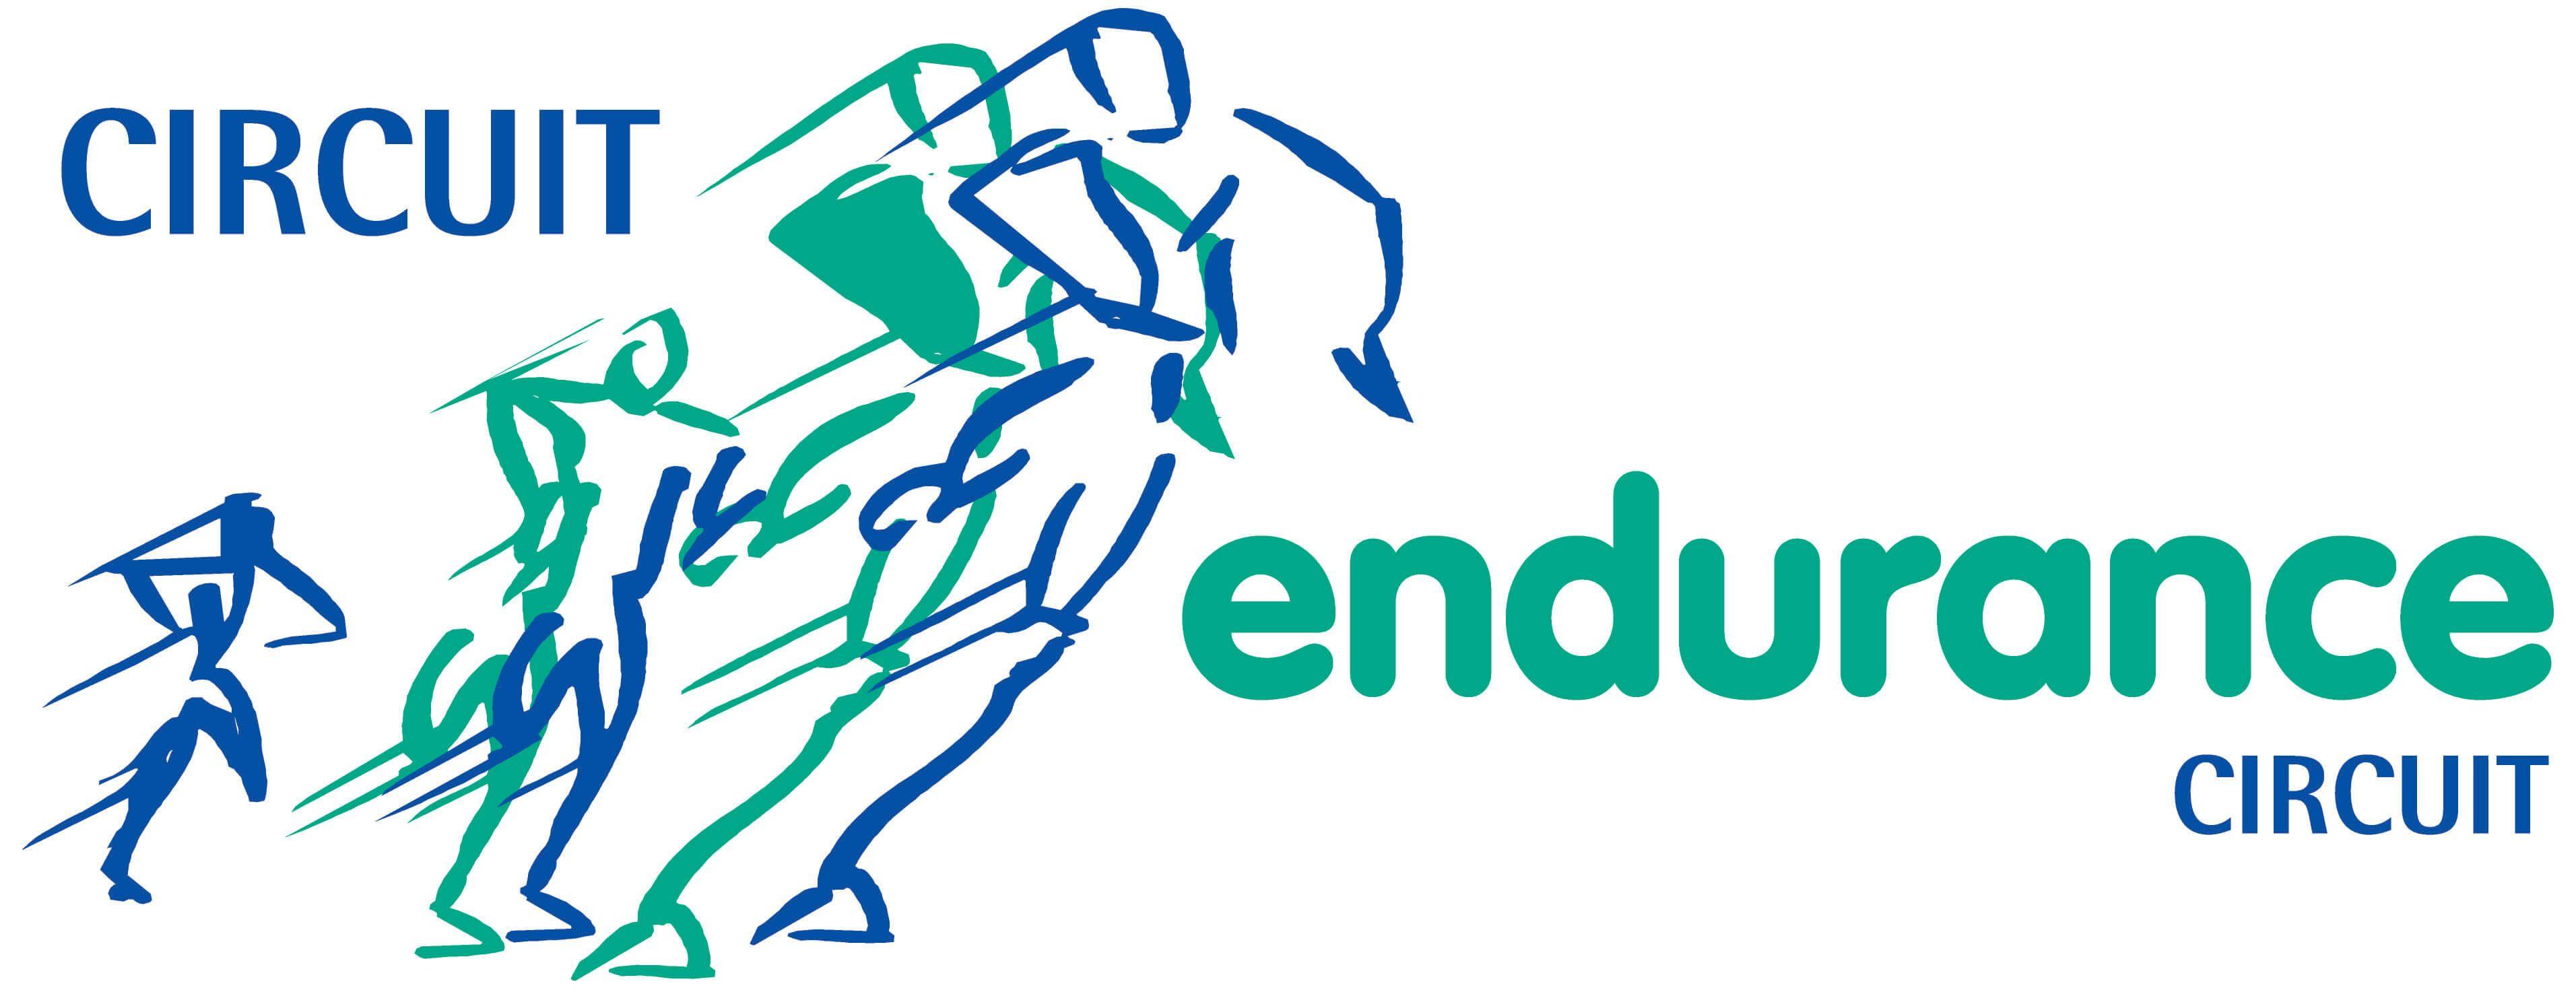 Endurance Logo - Circuit-Endurance-Logo – Circuit Endurance